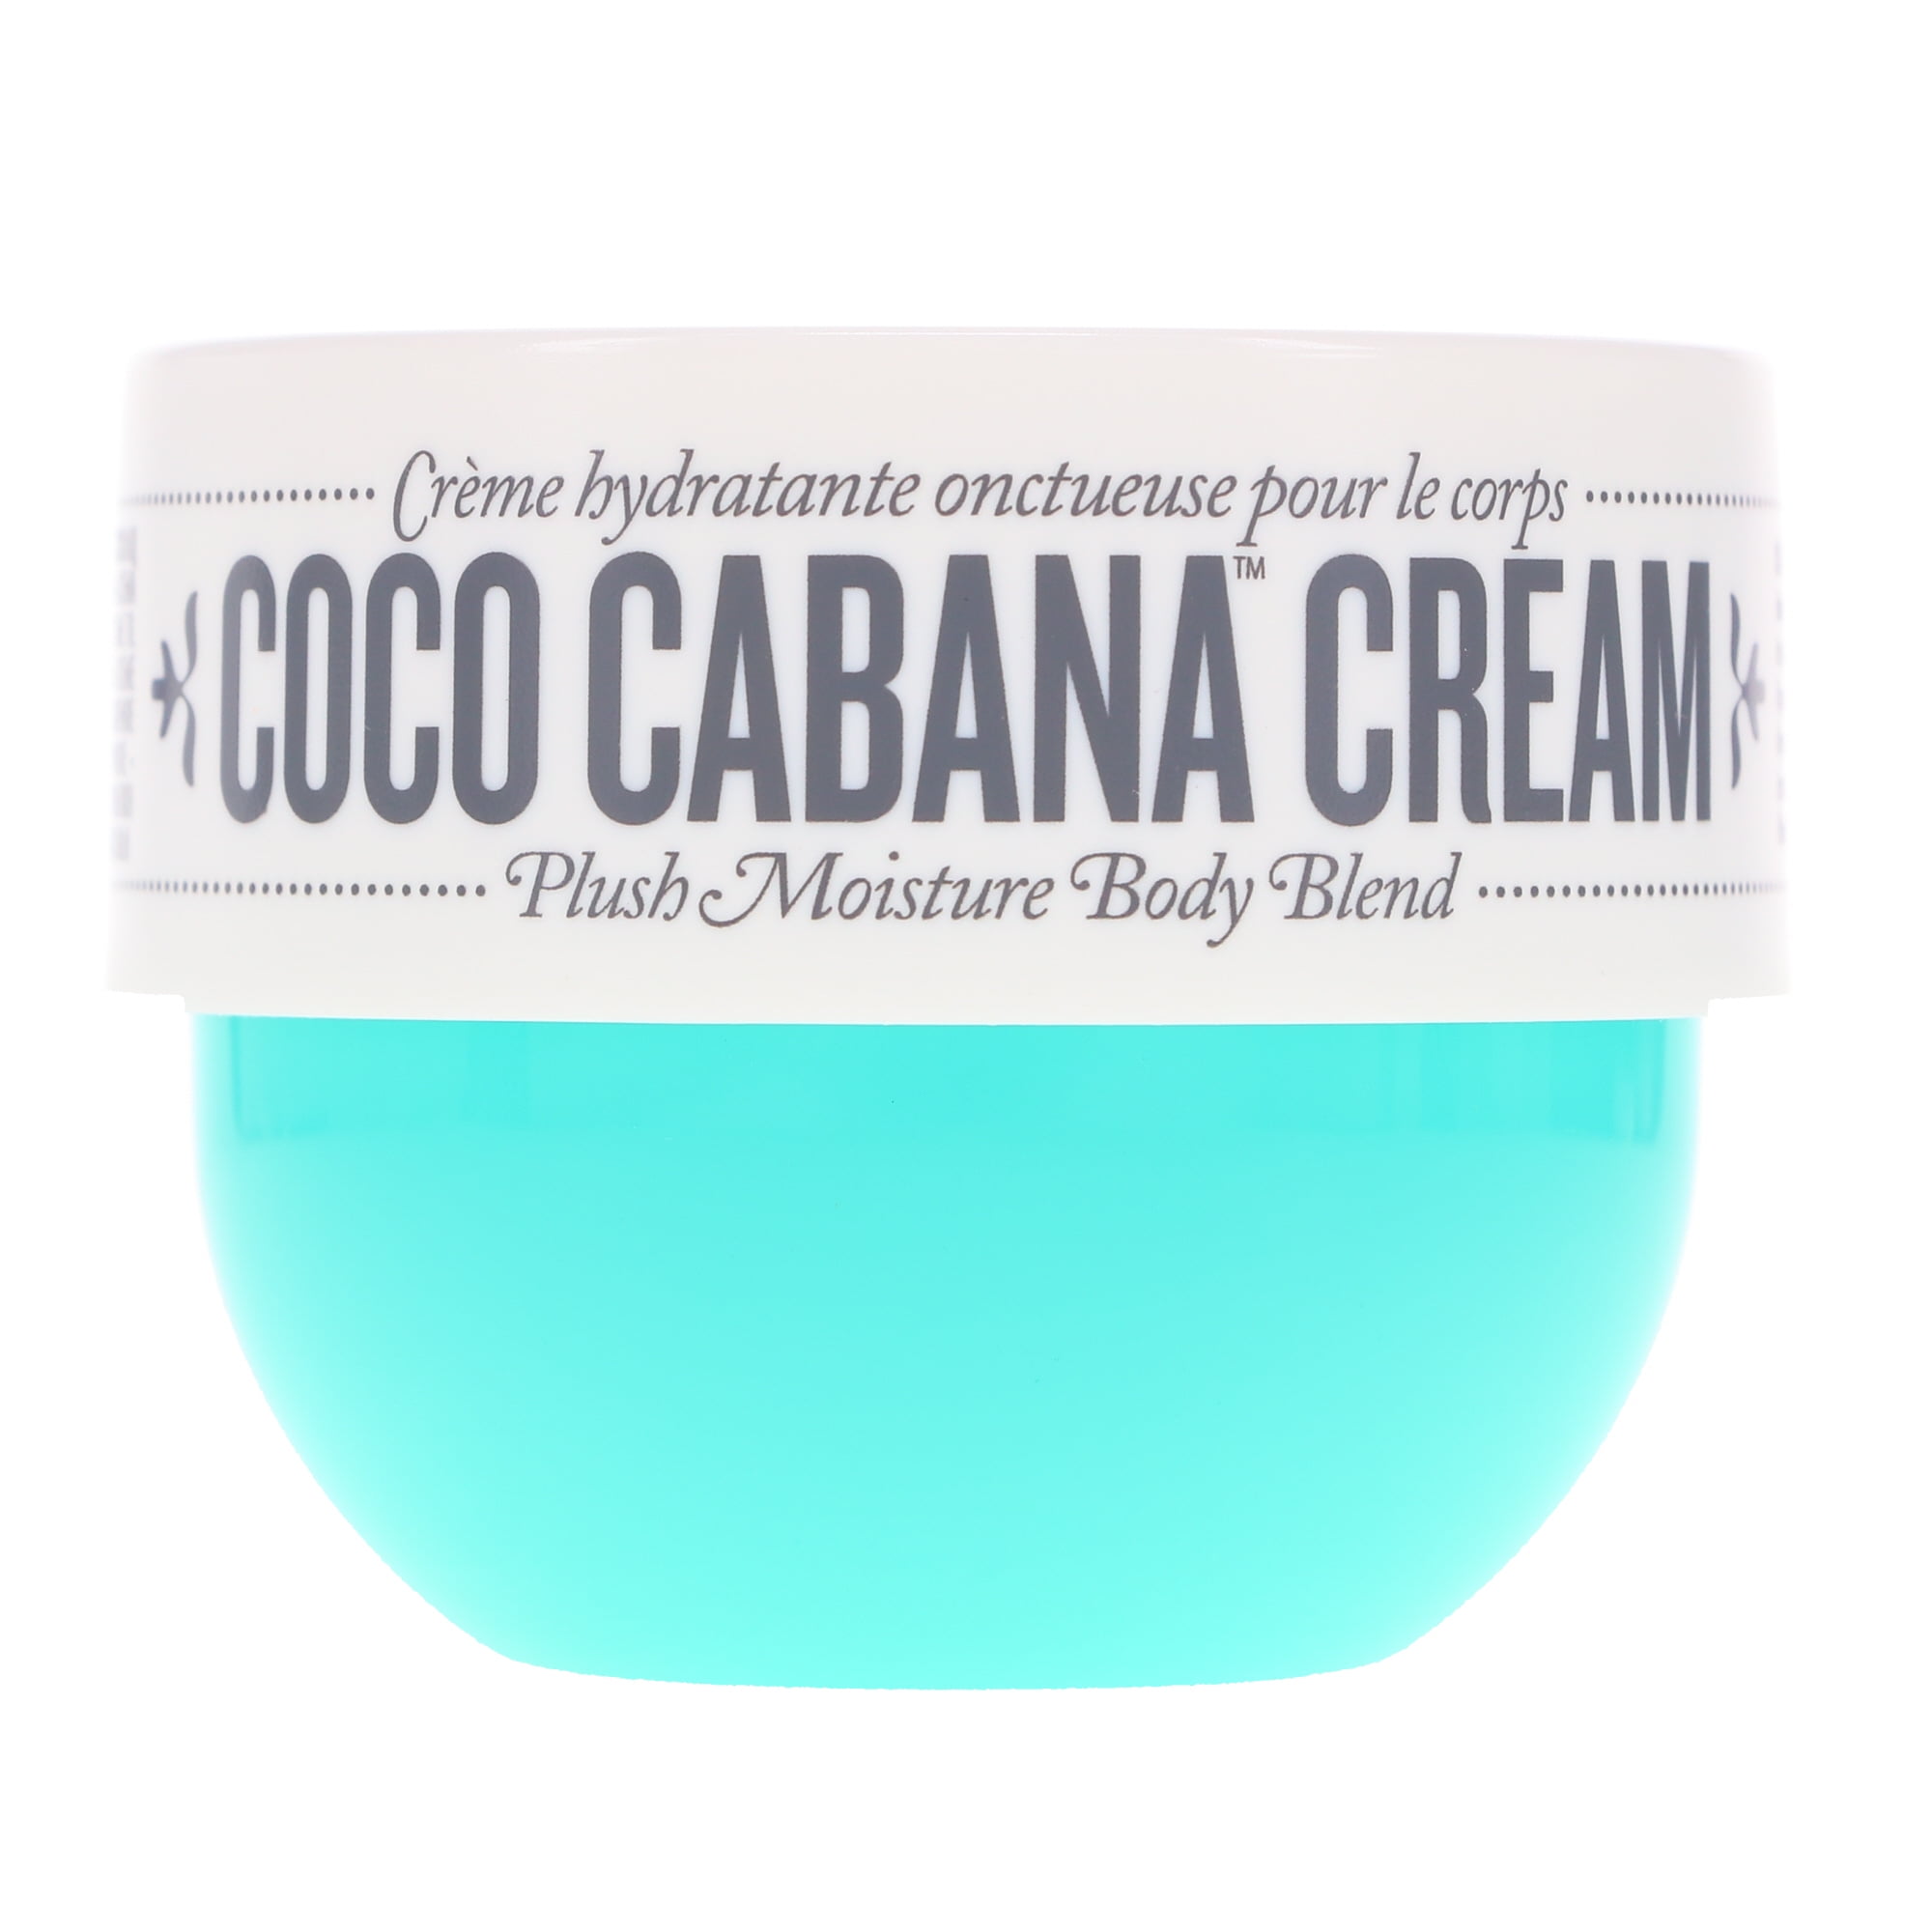 Coco Cabana Cream by Sol de Janeiro for Unisex - 2.5 oz Cream